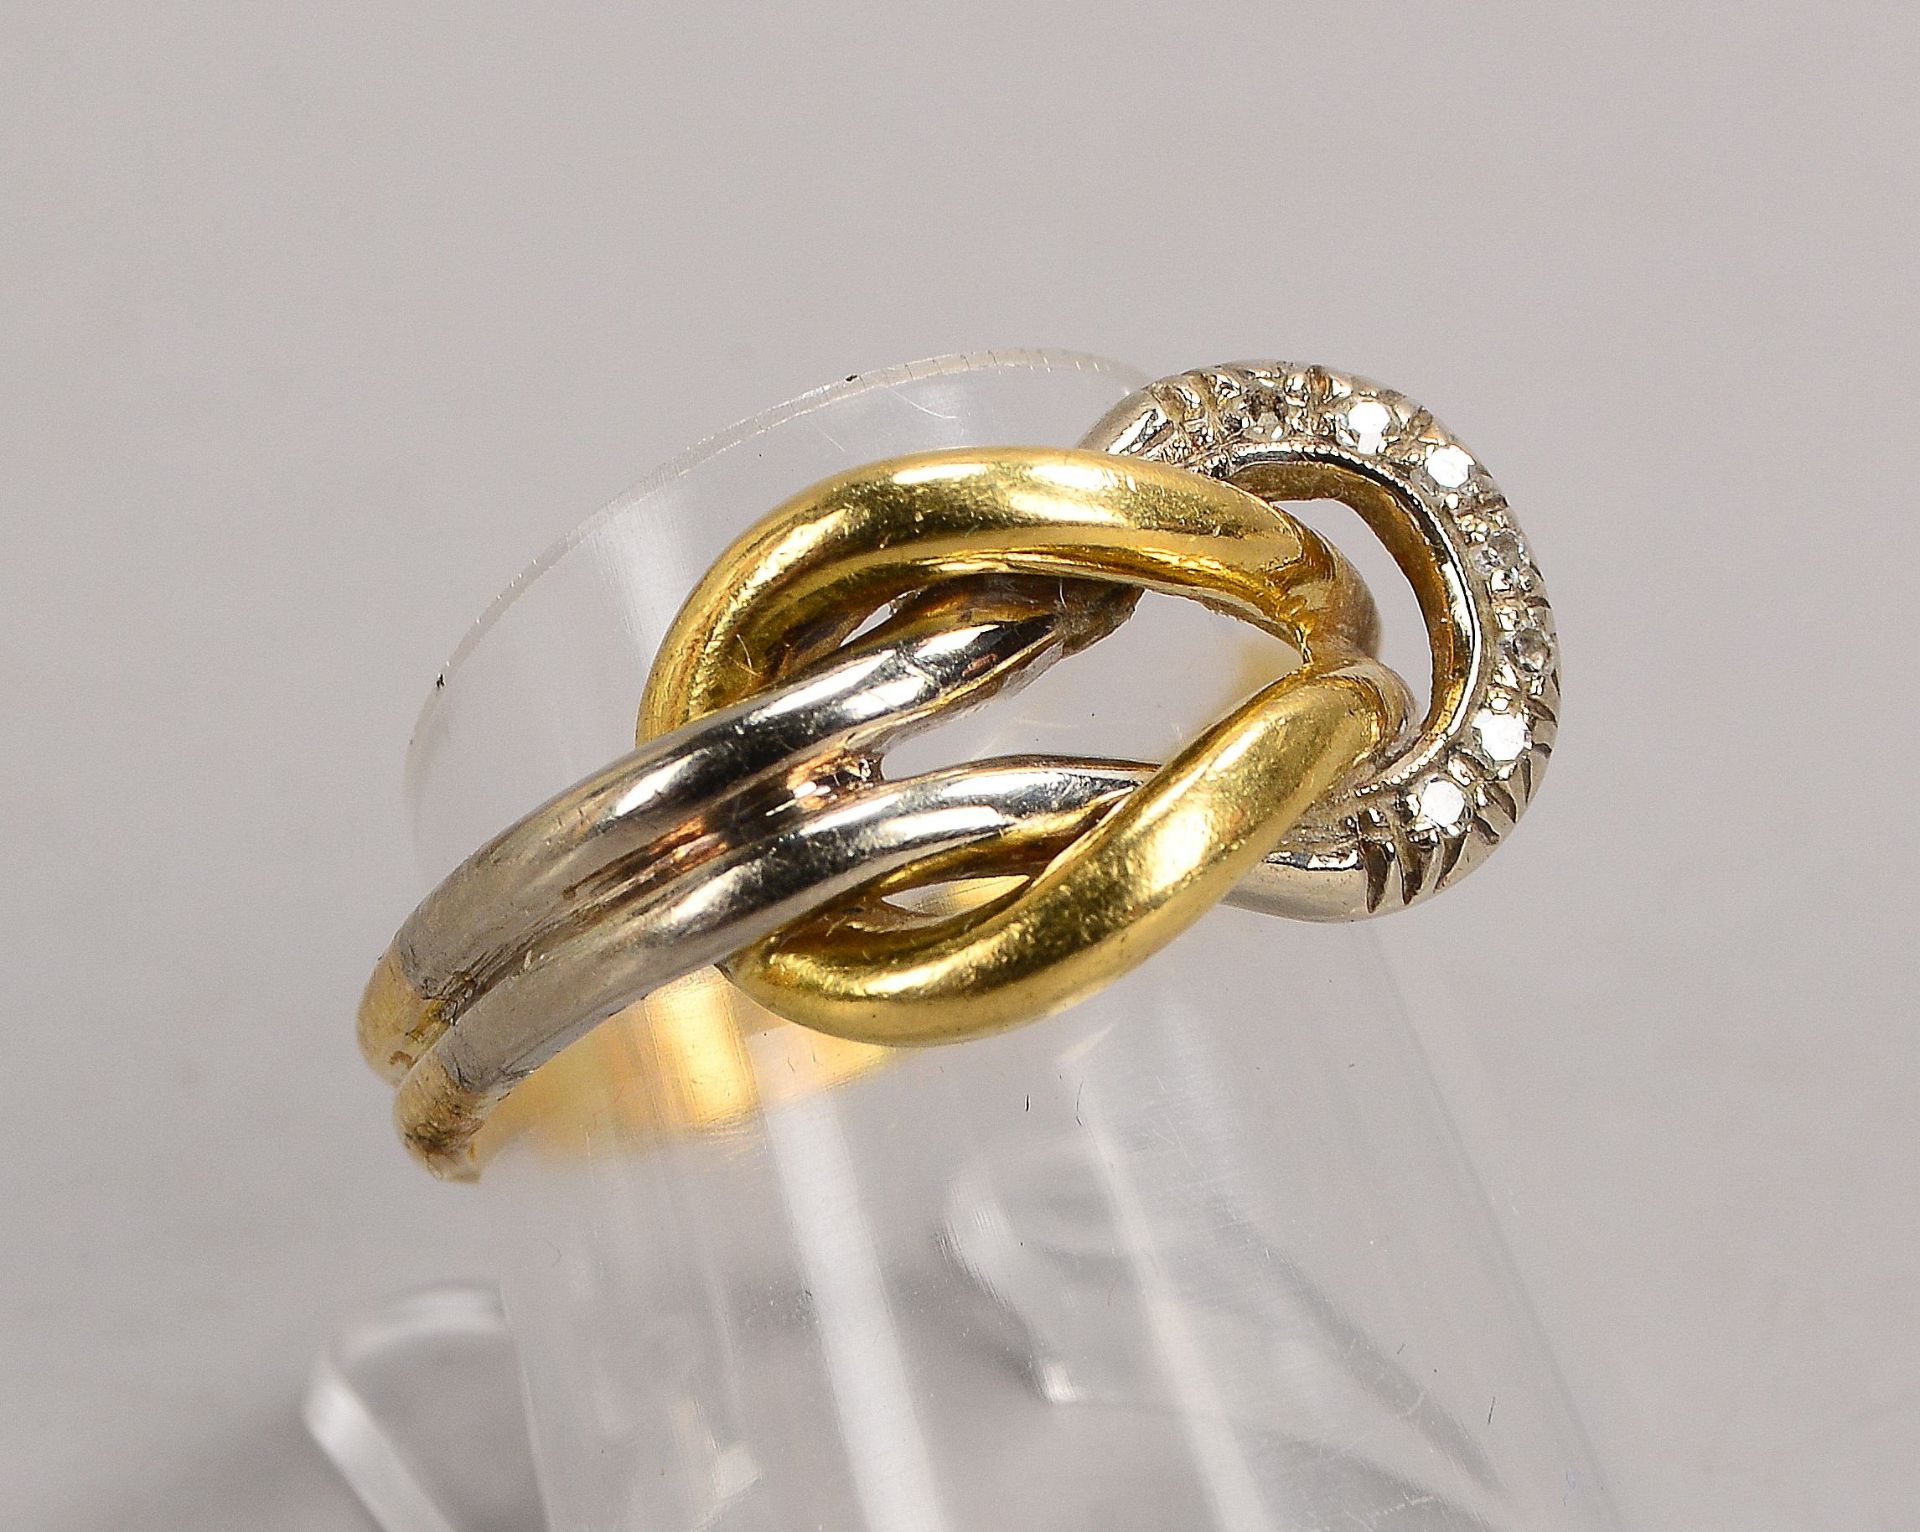 Ring, 750 GG/WG (gestempelt), Ringkopf in Kreuzknotenform, besetzt mit 7x kleinen Diamanten; RG 56, 